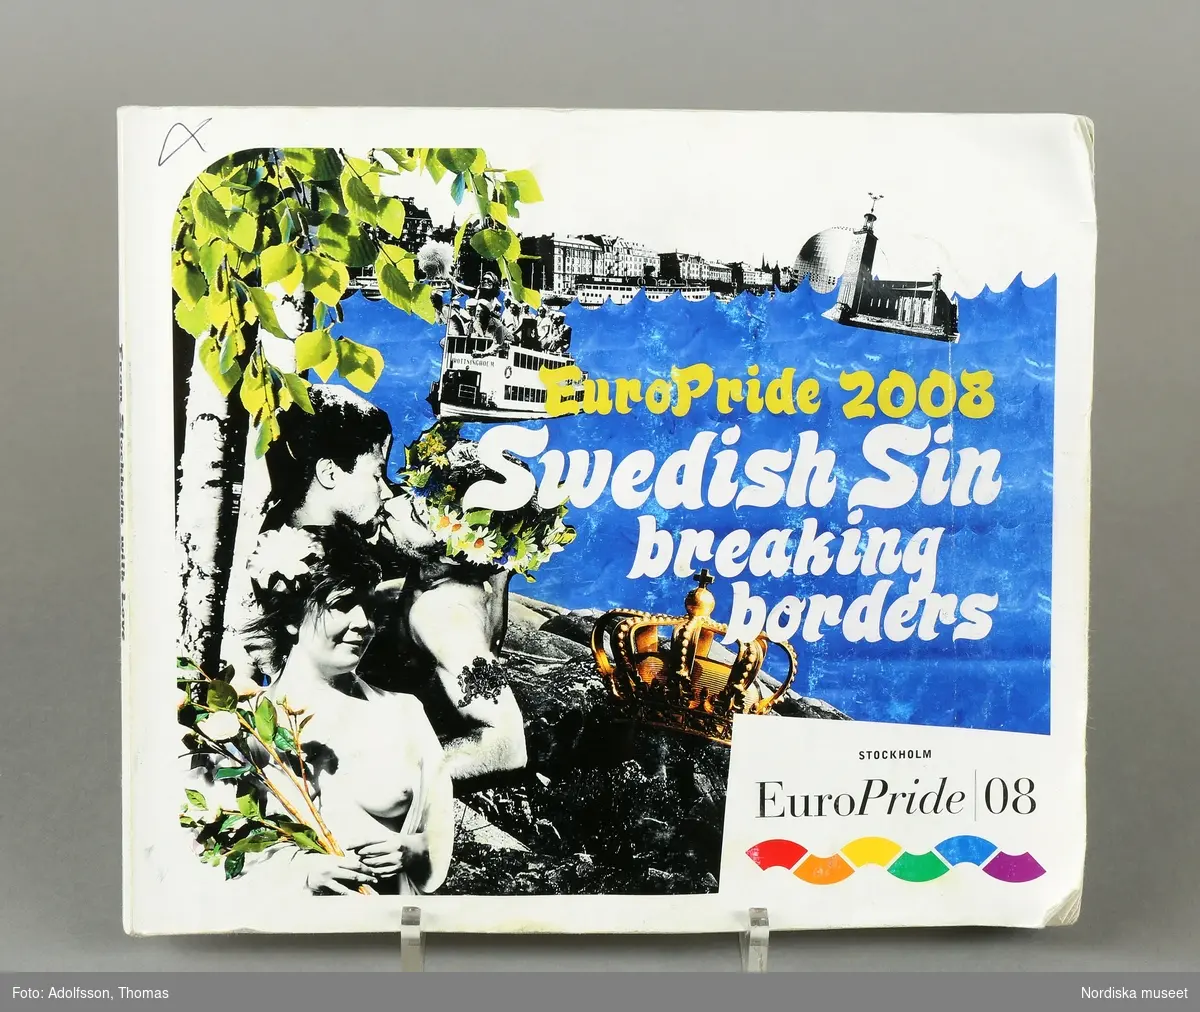 Programhäfte för EuropPride/Stockholm Pride 2008. Häfte med 104 sidor och pärmar av tjockare papper. Designad av *ZIE* och tryckt på Norra Skåne 2008. Innehåller hela programmet för EuroPride 2008, på svenska och engelska. På de flesta sidor anteckningar och markeringar med kulspetspenna. 

Använd av givaren och hans pojkvän inför och under Europride / Stockholm Pride 2008, vilket är den största årliga festivalen för HBT-personer i Sverige och i år firades 2008-07-25--2008-08-03.

Givaren och hans pojkvän, som har varit på de flesta Pride-firanden sedan 1998, brukar försöka gå på så mycket av aktiviteterna som möjligt. 
Utdrag ur referat av intervju med givaren (Peter): "Peter och Marcus brukar förbereda sig inför Prideveckorna genom att titta igenom programmet flera veckor i förväg. Marcus brukar skriva ut det från nätet och pricka för vad han vill göra. Peter brukar sedan också pricka för i ett eget program och sedan jämför de och bestämmer vad de ska gå på. Programmet används sedan flitigt under veckan."

I detta programhäfte har Peter gjort anteckningar om vad han ville gå på och ibland vad Marcus ville gå på. Även några korta noteringar vad han gjort för övrigt (alltså utanför programmet). De sistnämnda noteringarna är gjorda efter att jag pratat med honom om att jag skulle vilja dokumentera hans pridefirande.

Se arkivet (D.457) för intervju med Peter om hans pridefirande samt renskrift av hans anteckningar i programhäftet.

Anm: Programhäftet är något nött och solkigt.

Föremålet ingår i Nordiska museets dokumentation av Europride 2008 med föremål, intervjuer och fotografier. Se arkivet D.457. med bl.a intervju av givaren. Övriga föremål med anknytning till Peter Csaszti se inv.nr 329.615-329.620 samt 329.669-329.670.
/Leif Wallin 2009-03-03